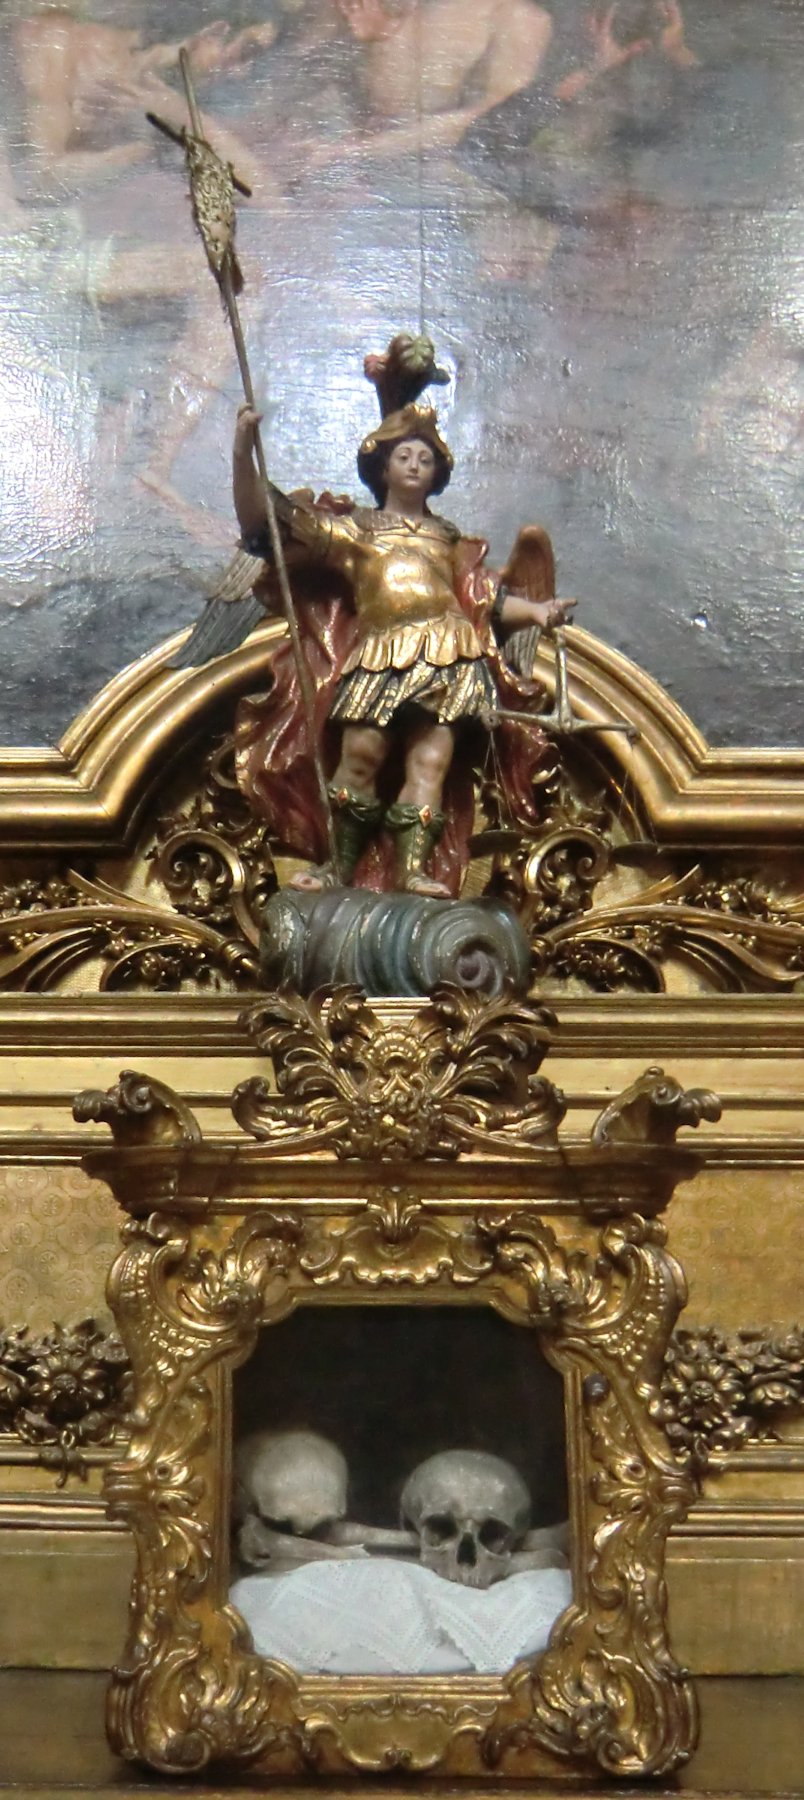 Gebeine von Märtyrern in der Basilika dos Mártires in Lissabon